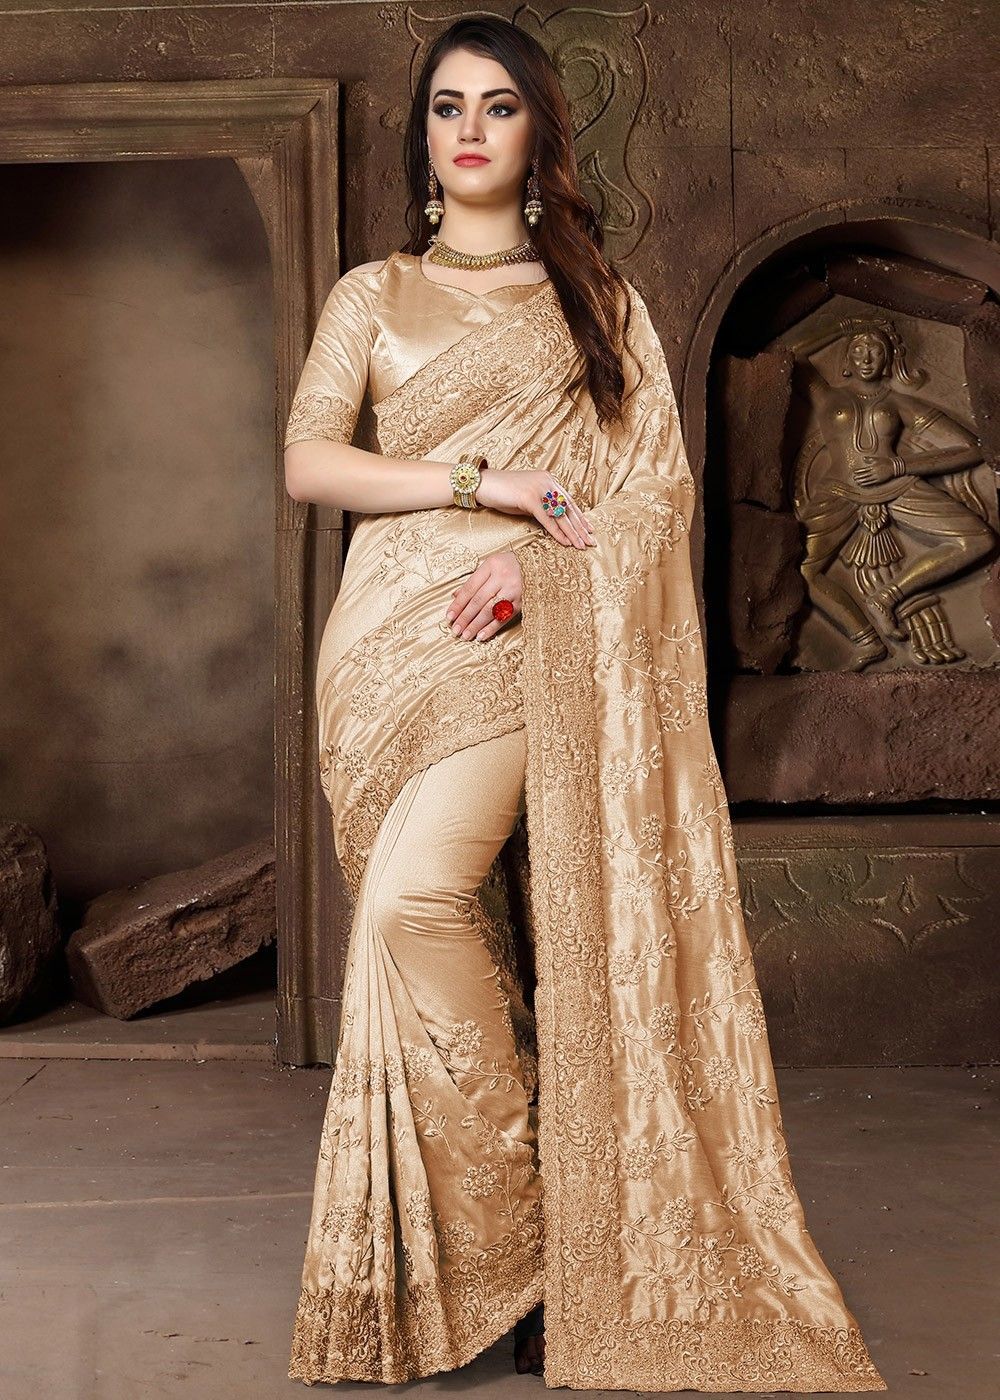 Golden Zari Embroidered Silk Wedding Saree Latest 3093SR06